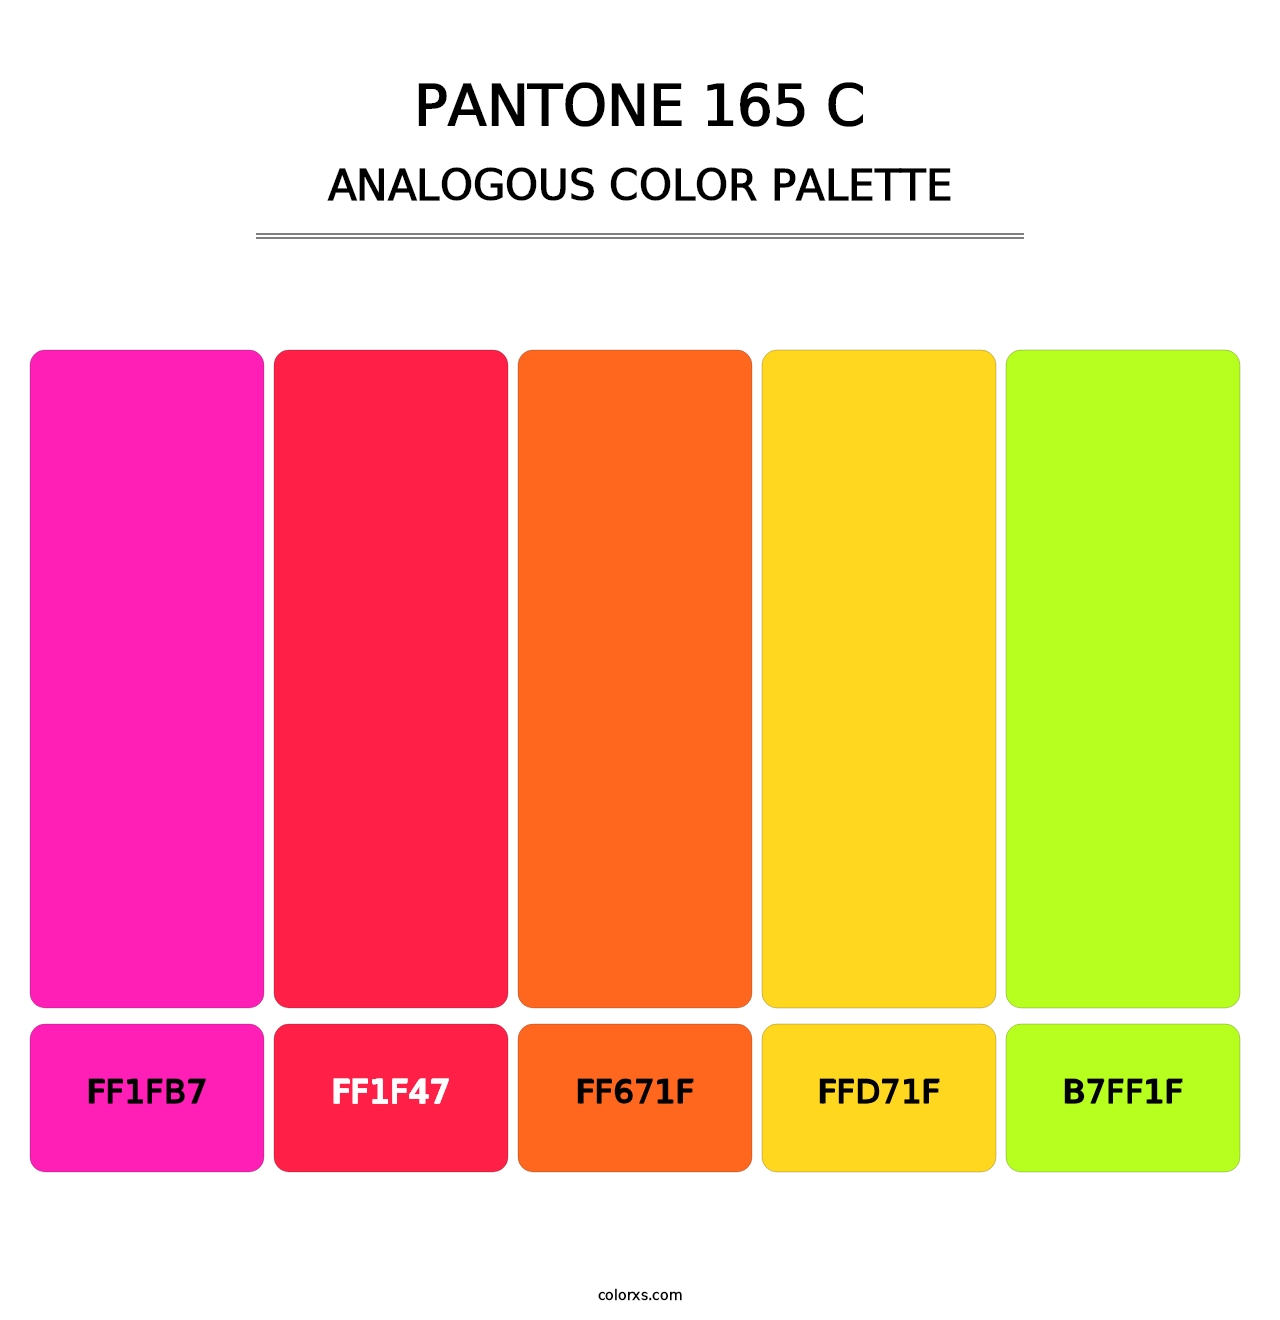 PANTONE 165 C - Analogous Color Palette